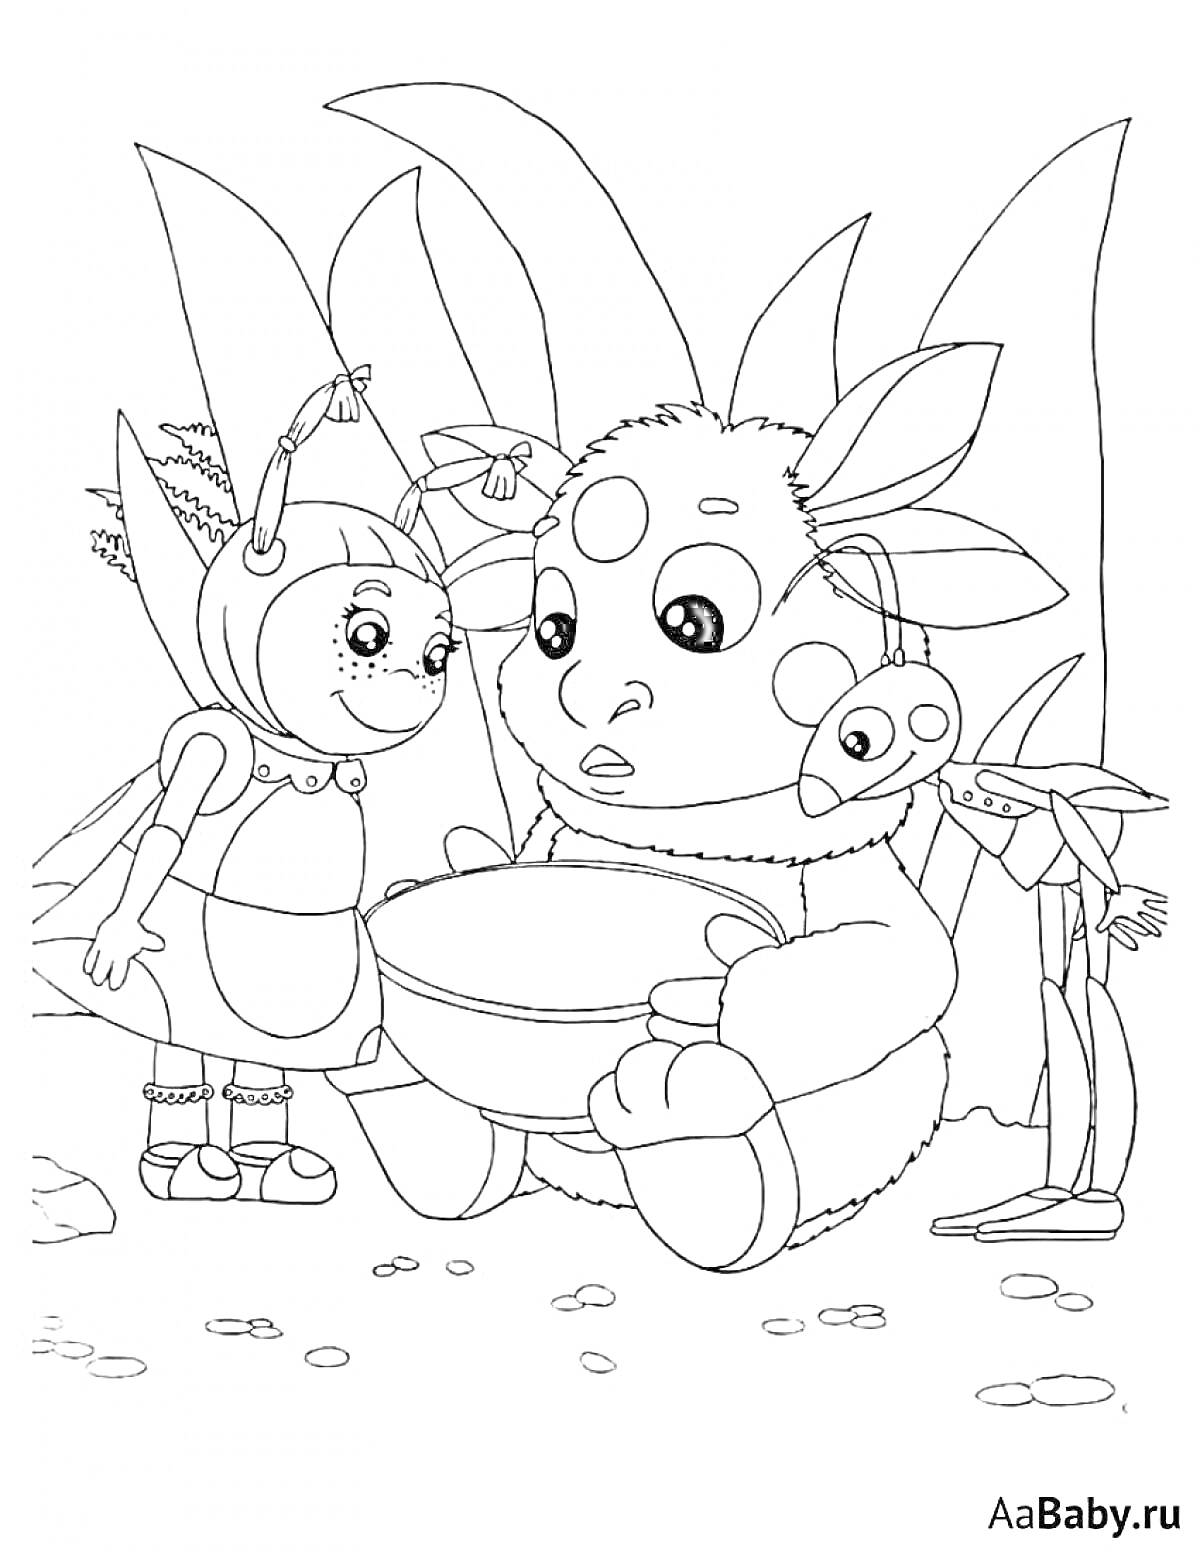 Раскраска Лунтик и его друзья: Лунтик с миской стоит между двумя друзьями на фоне природы, листья на заднем плане